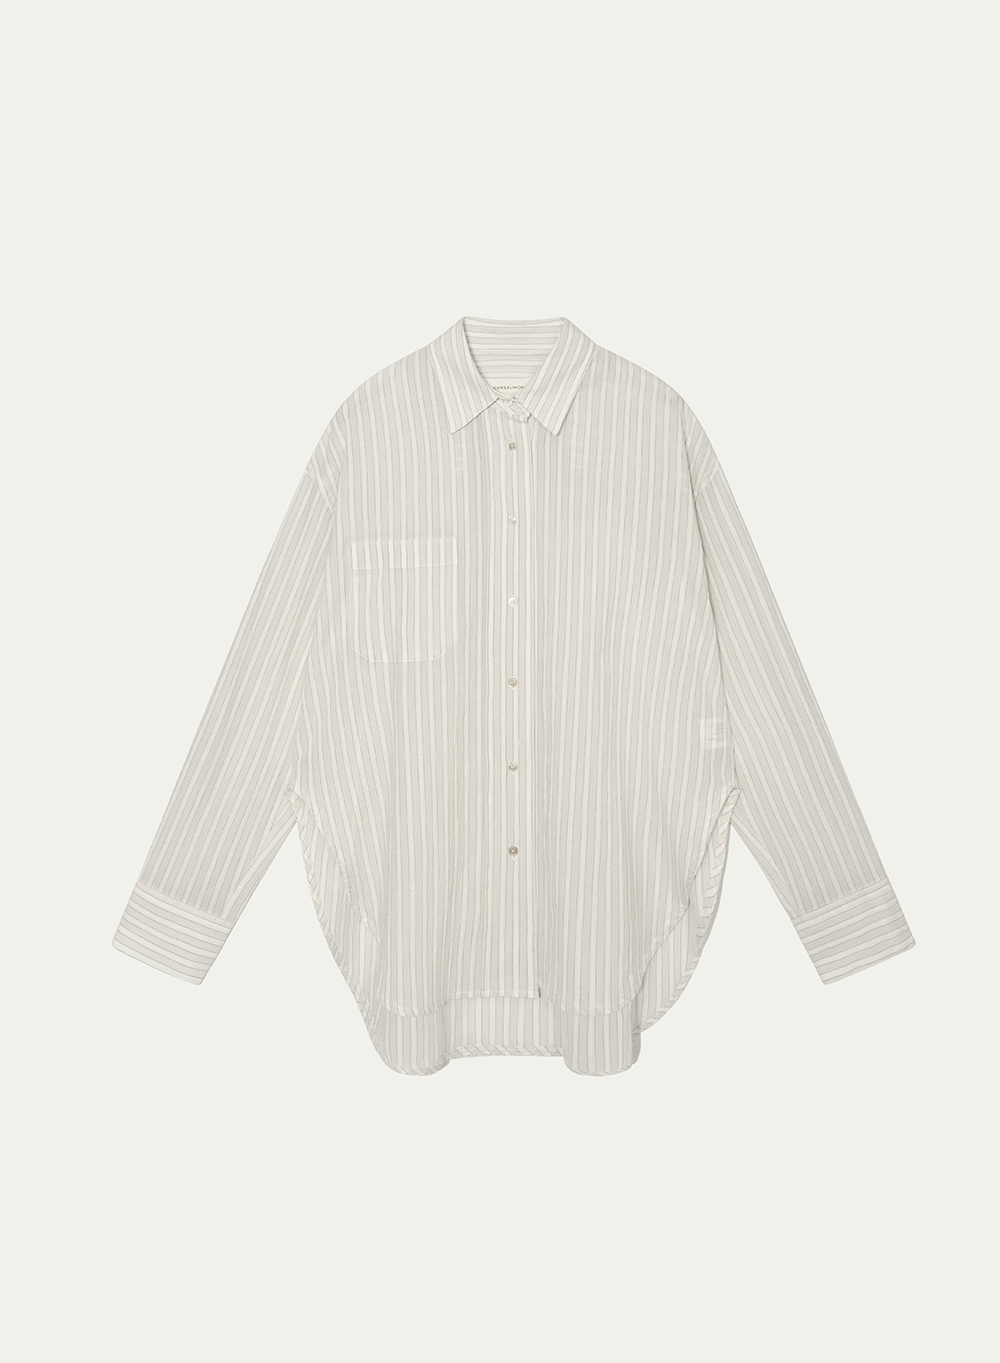 Studio Shirt From Japan (KUWAMURA) Gray-Stripe